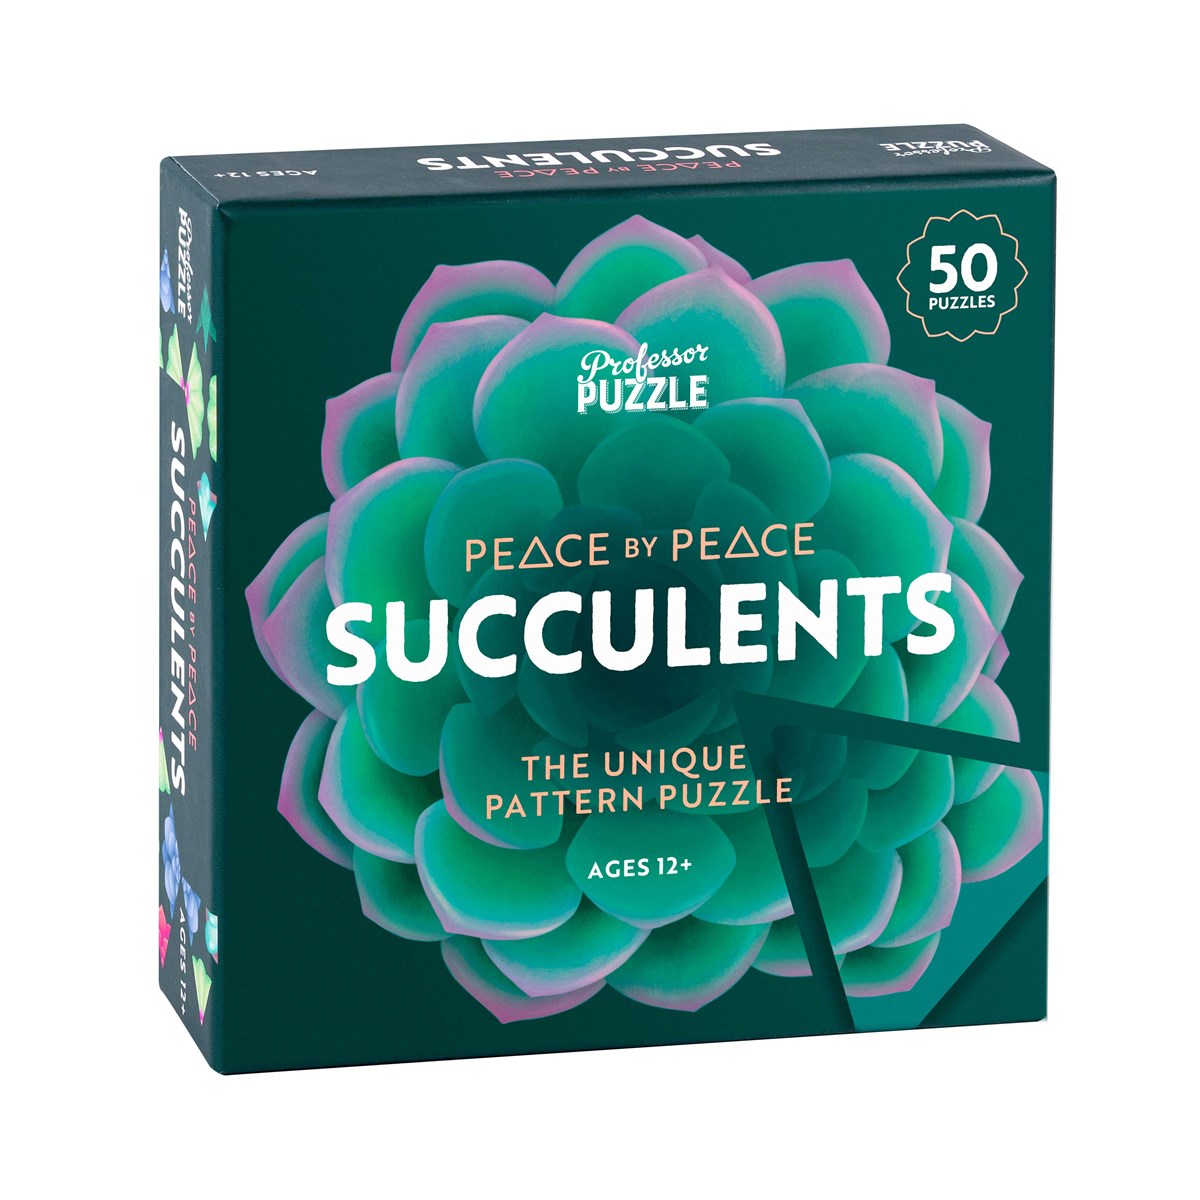 Joc de societate - Peace by Peace: Succulents | Professor Puzzle image0